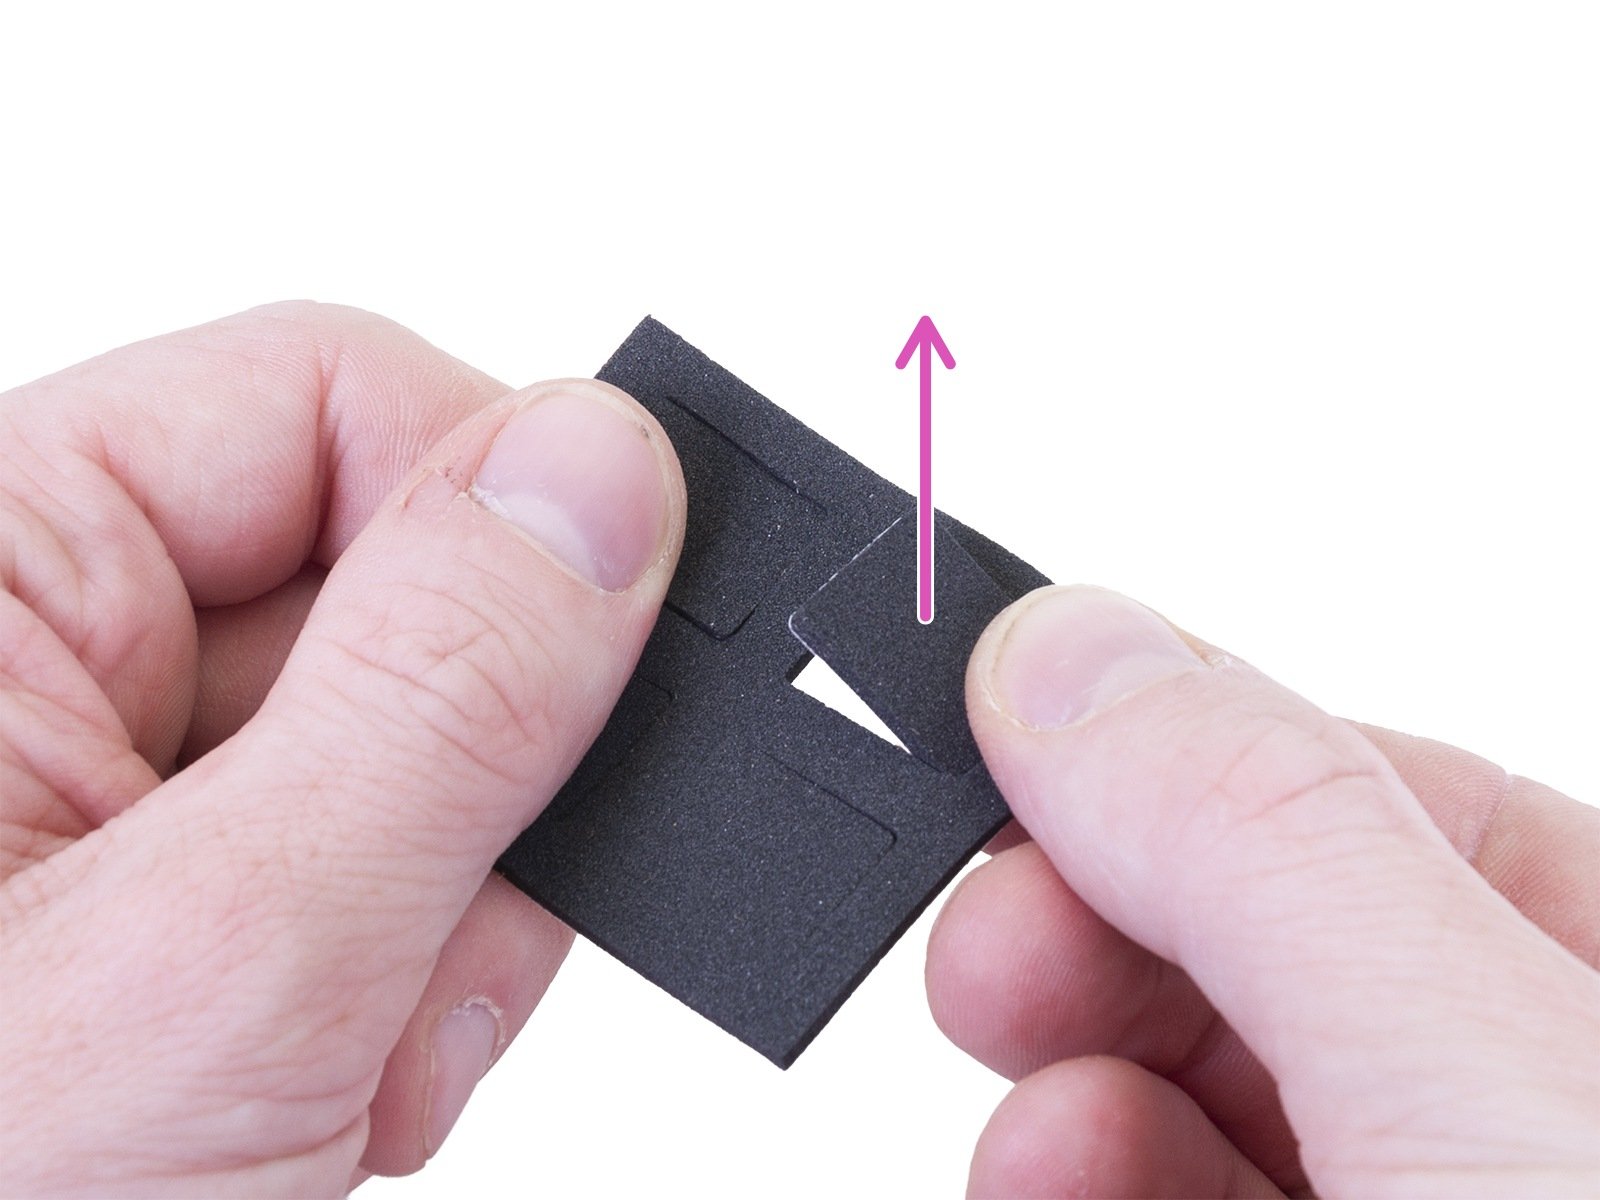 Attaching anti-slip pads